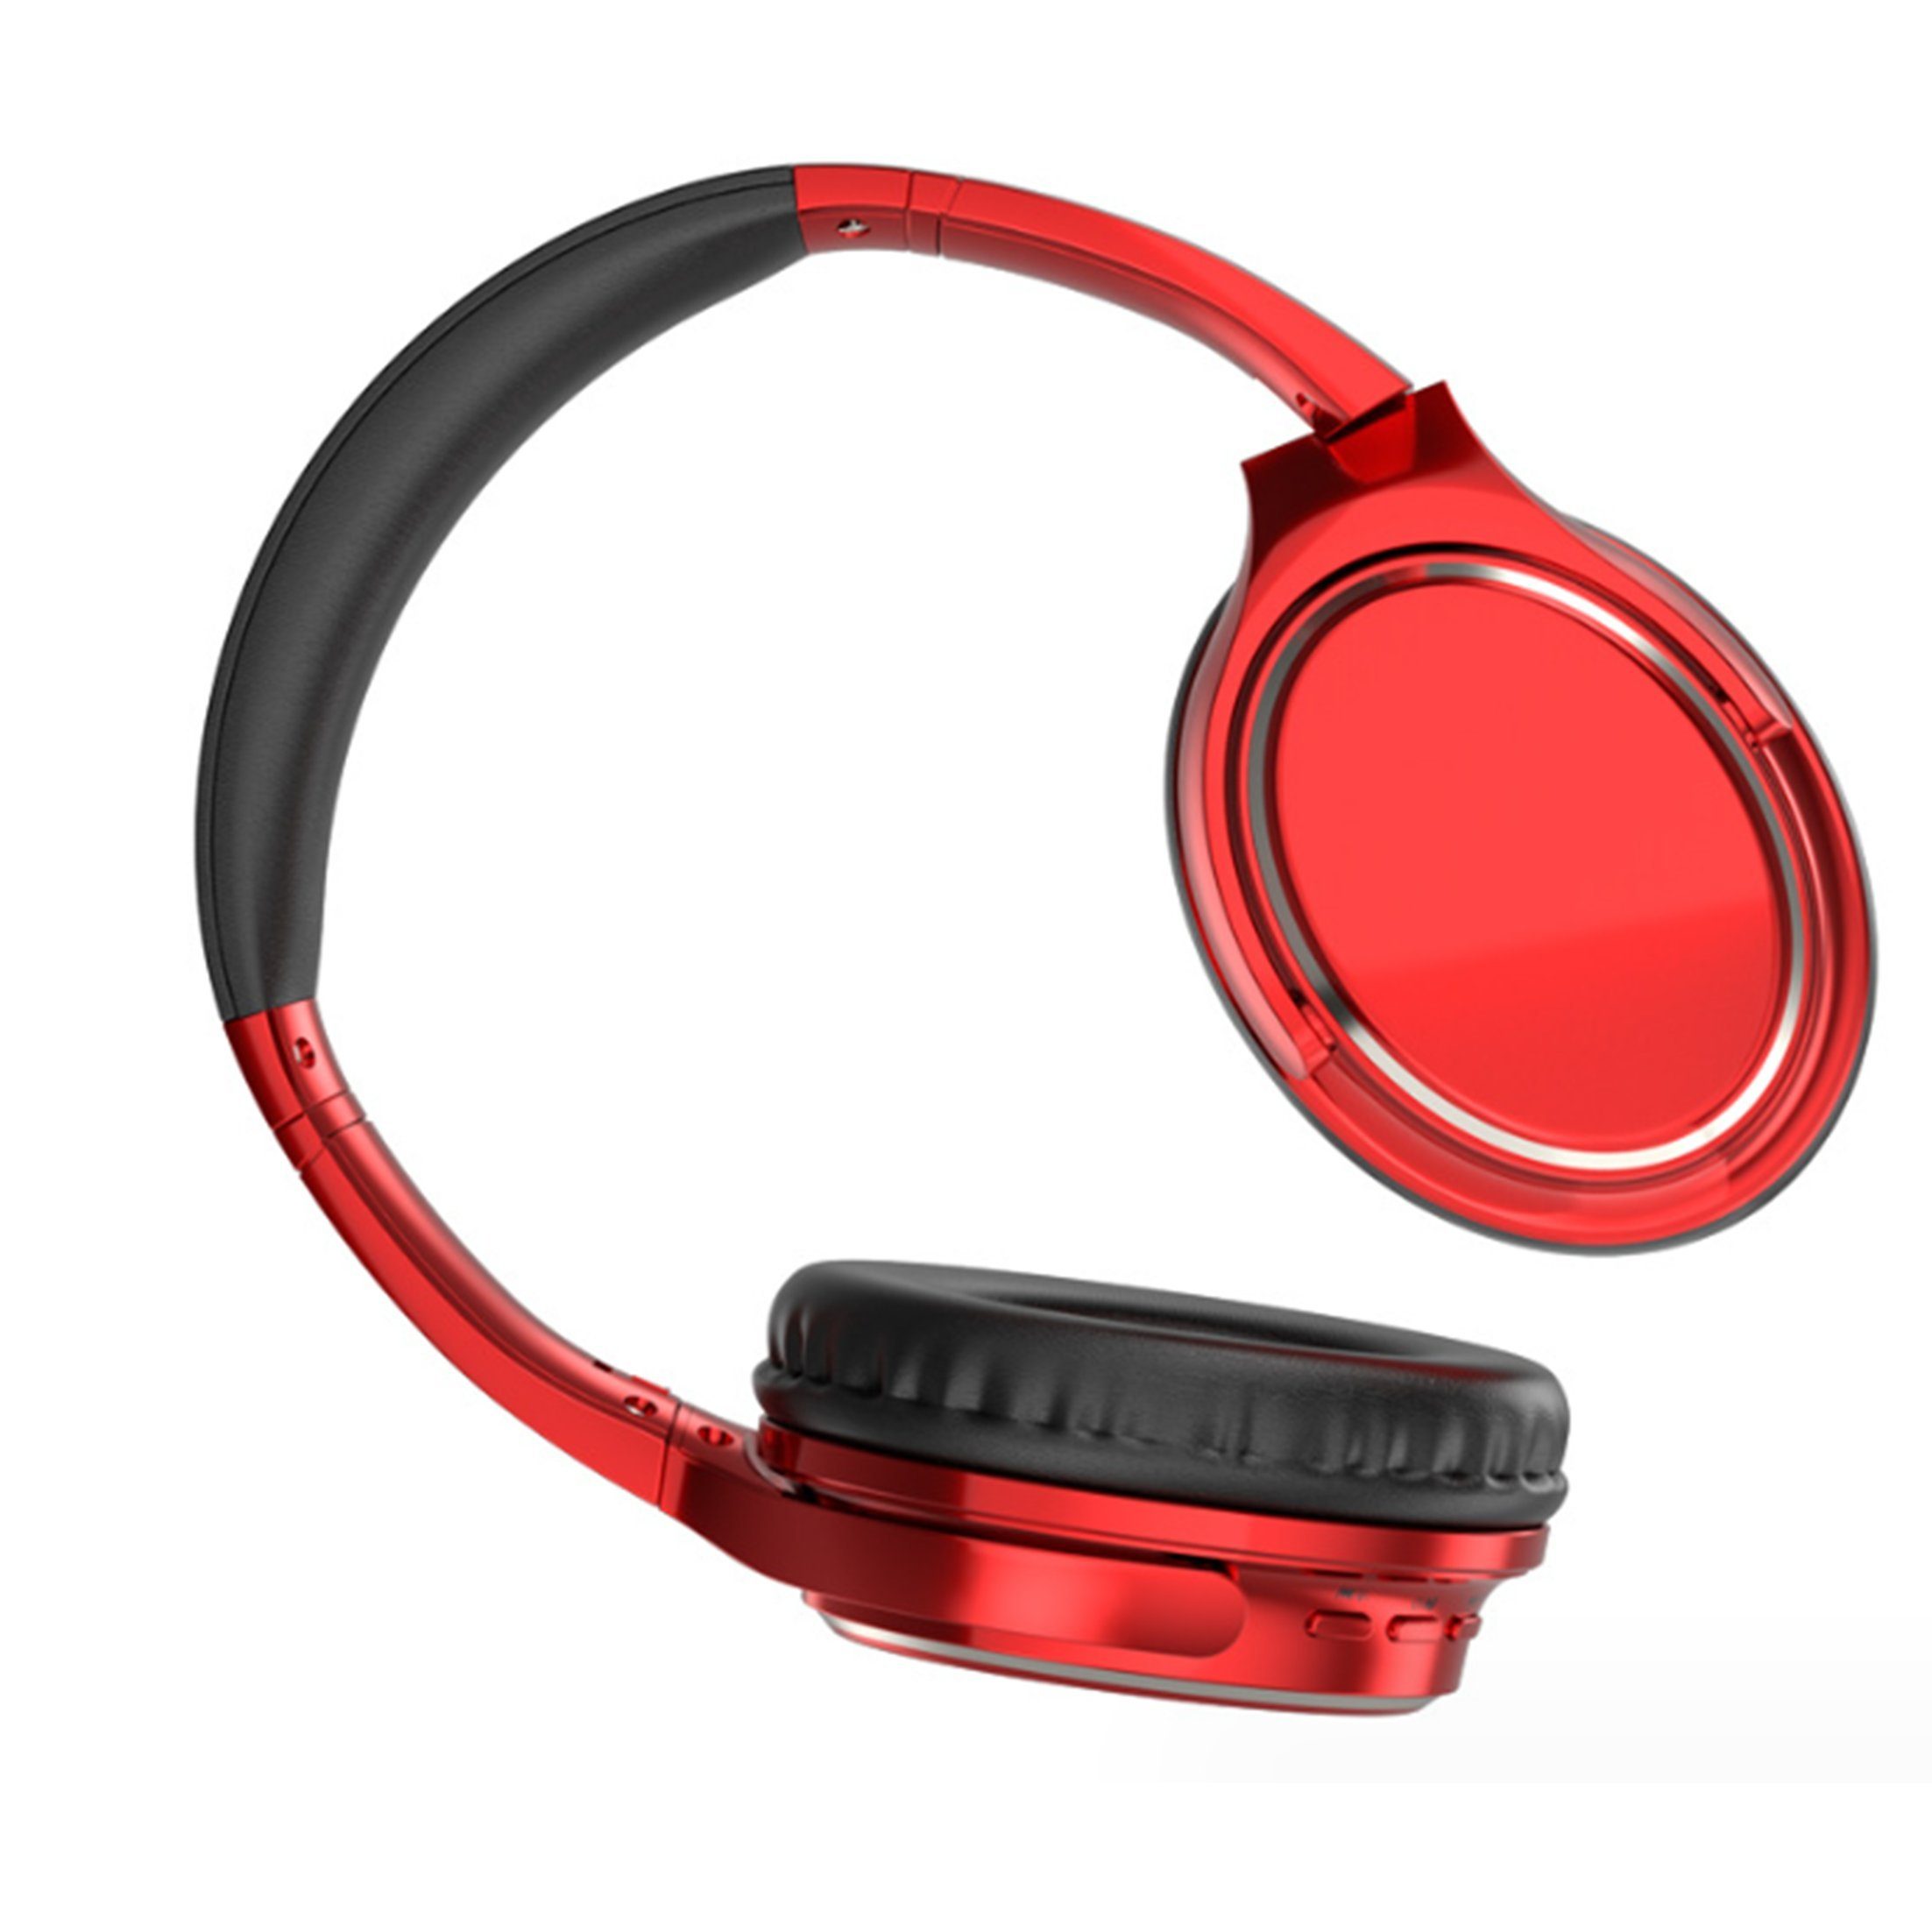 Rote Bluetooth Kopfhörer online kaufen | OTTO